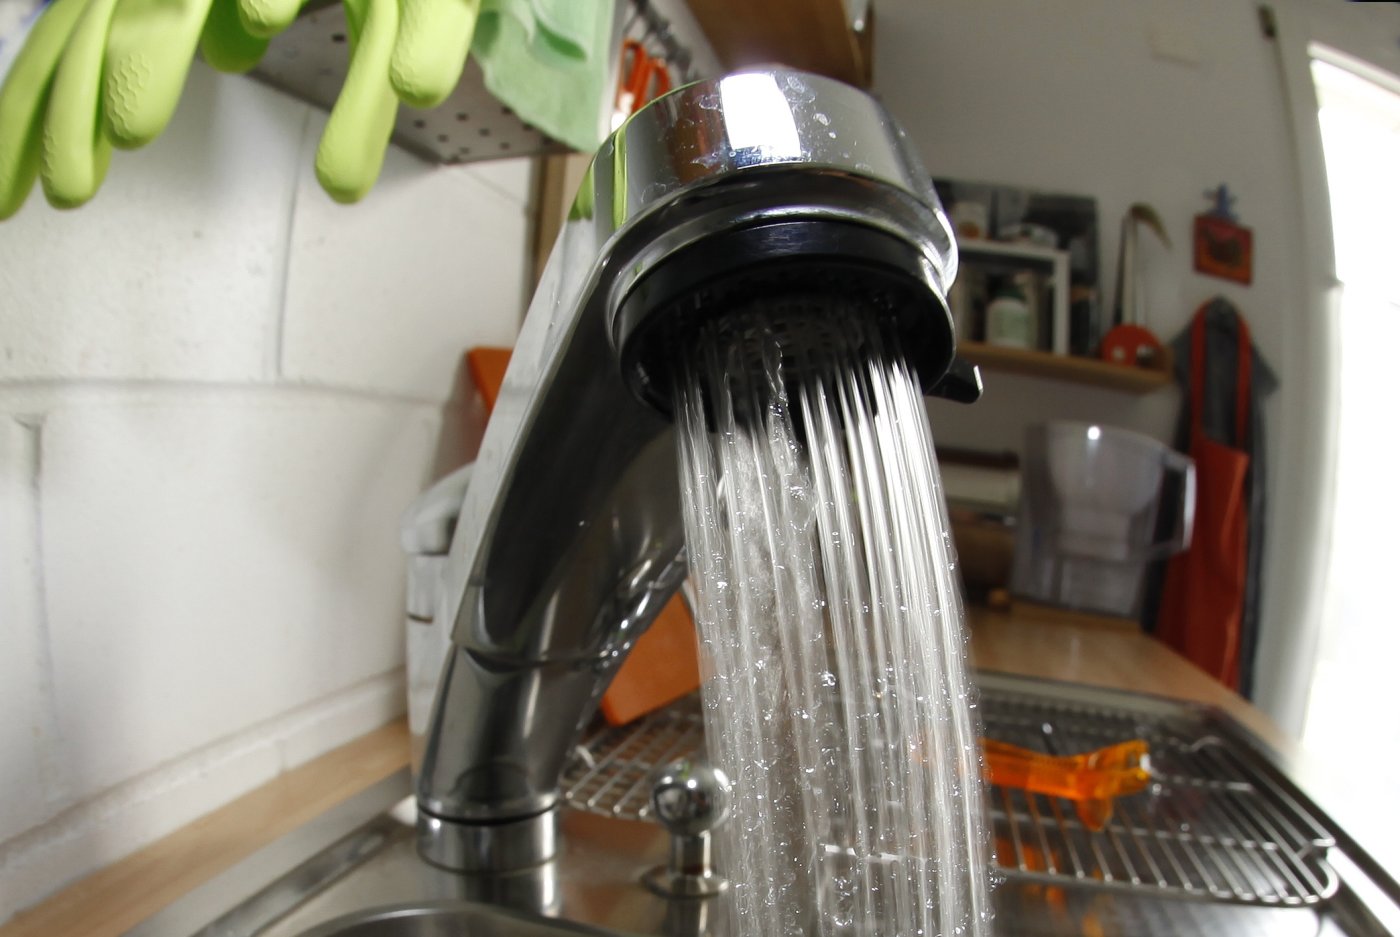 Eau. Lavabo de cuisine avec robinet mitigeur pour consommer moins, Delémont 24 août 2010. (Roger Meier/Bist)